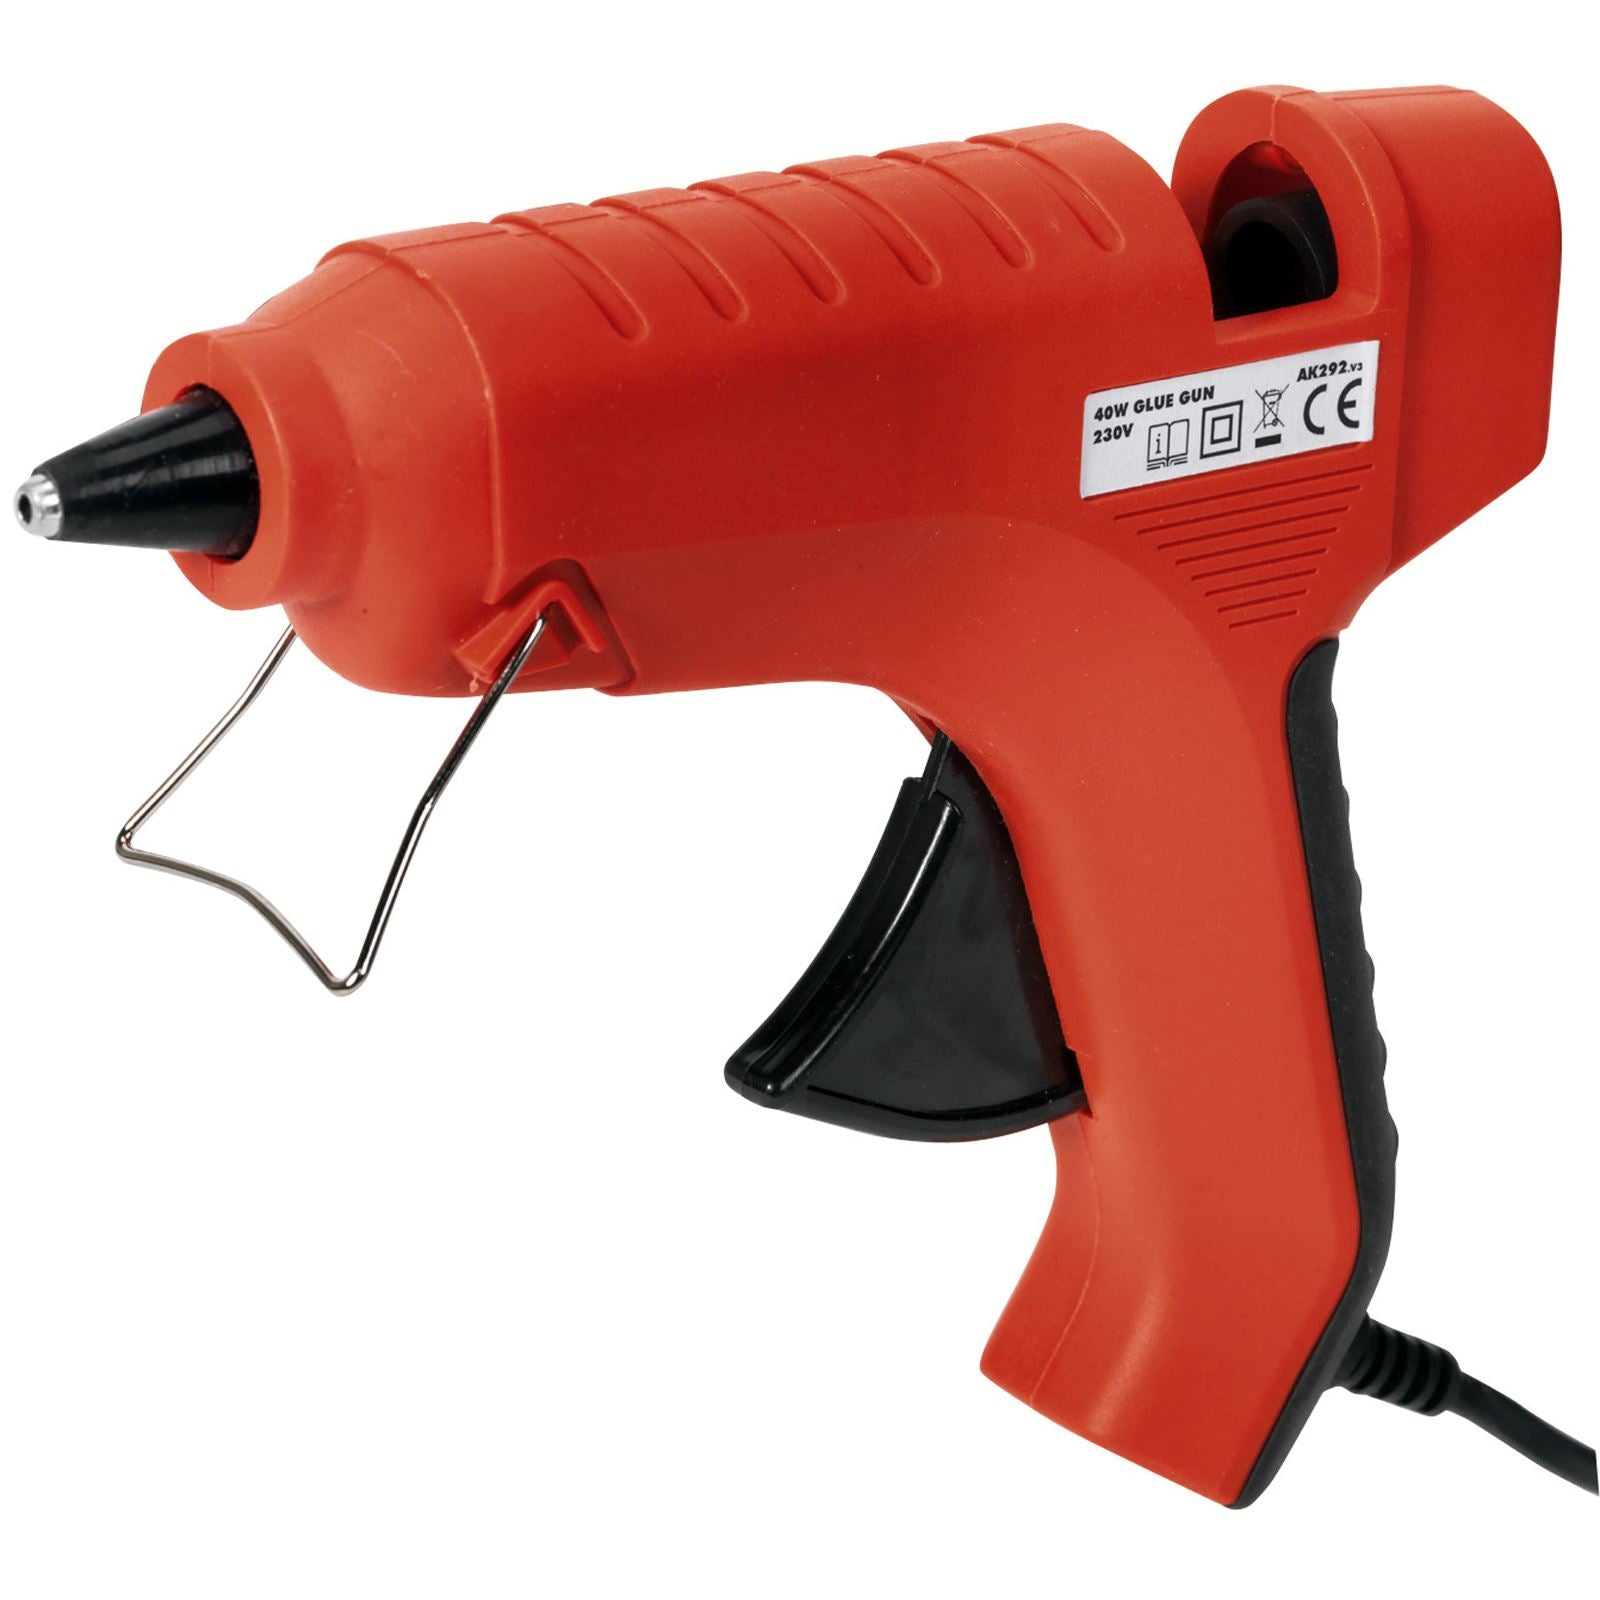 Sealey 40W Glue Gun 230V Hobby Craft Mini Work Trigger Feed Control